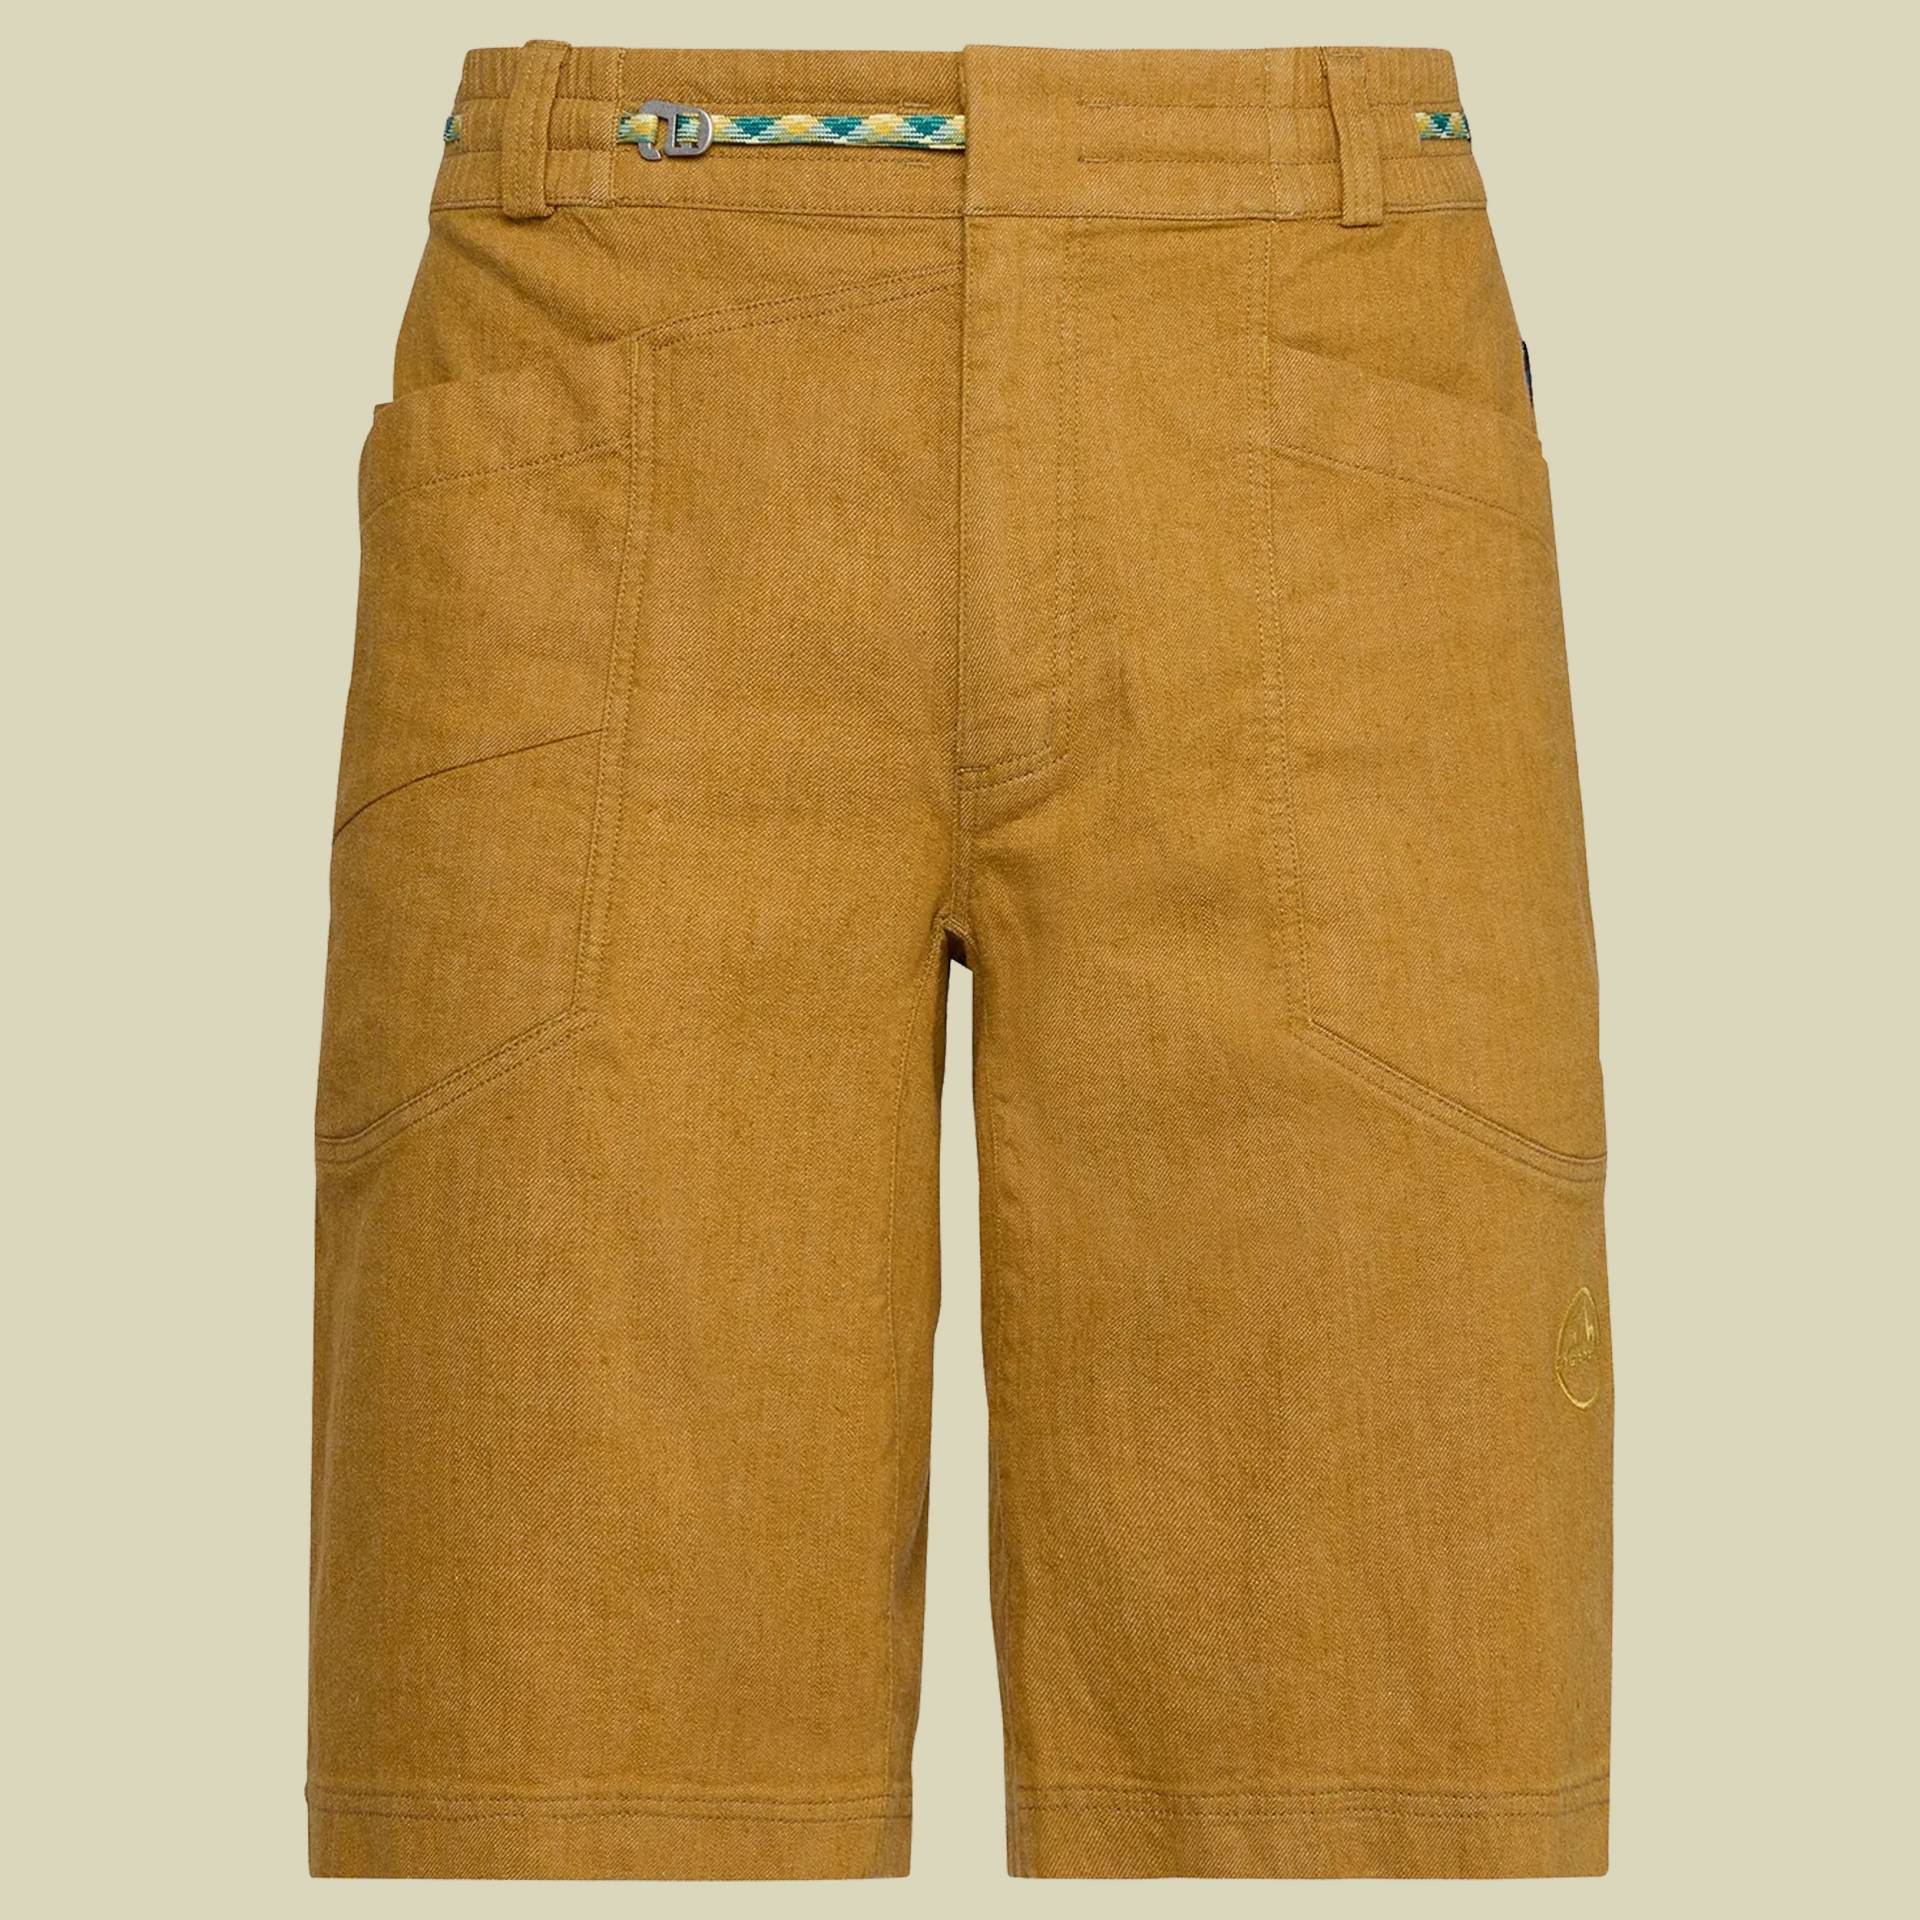 Sierra Rock Short Men XL gelb - savana von La Sportiva S.p.A.